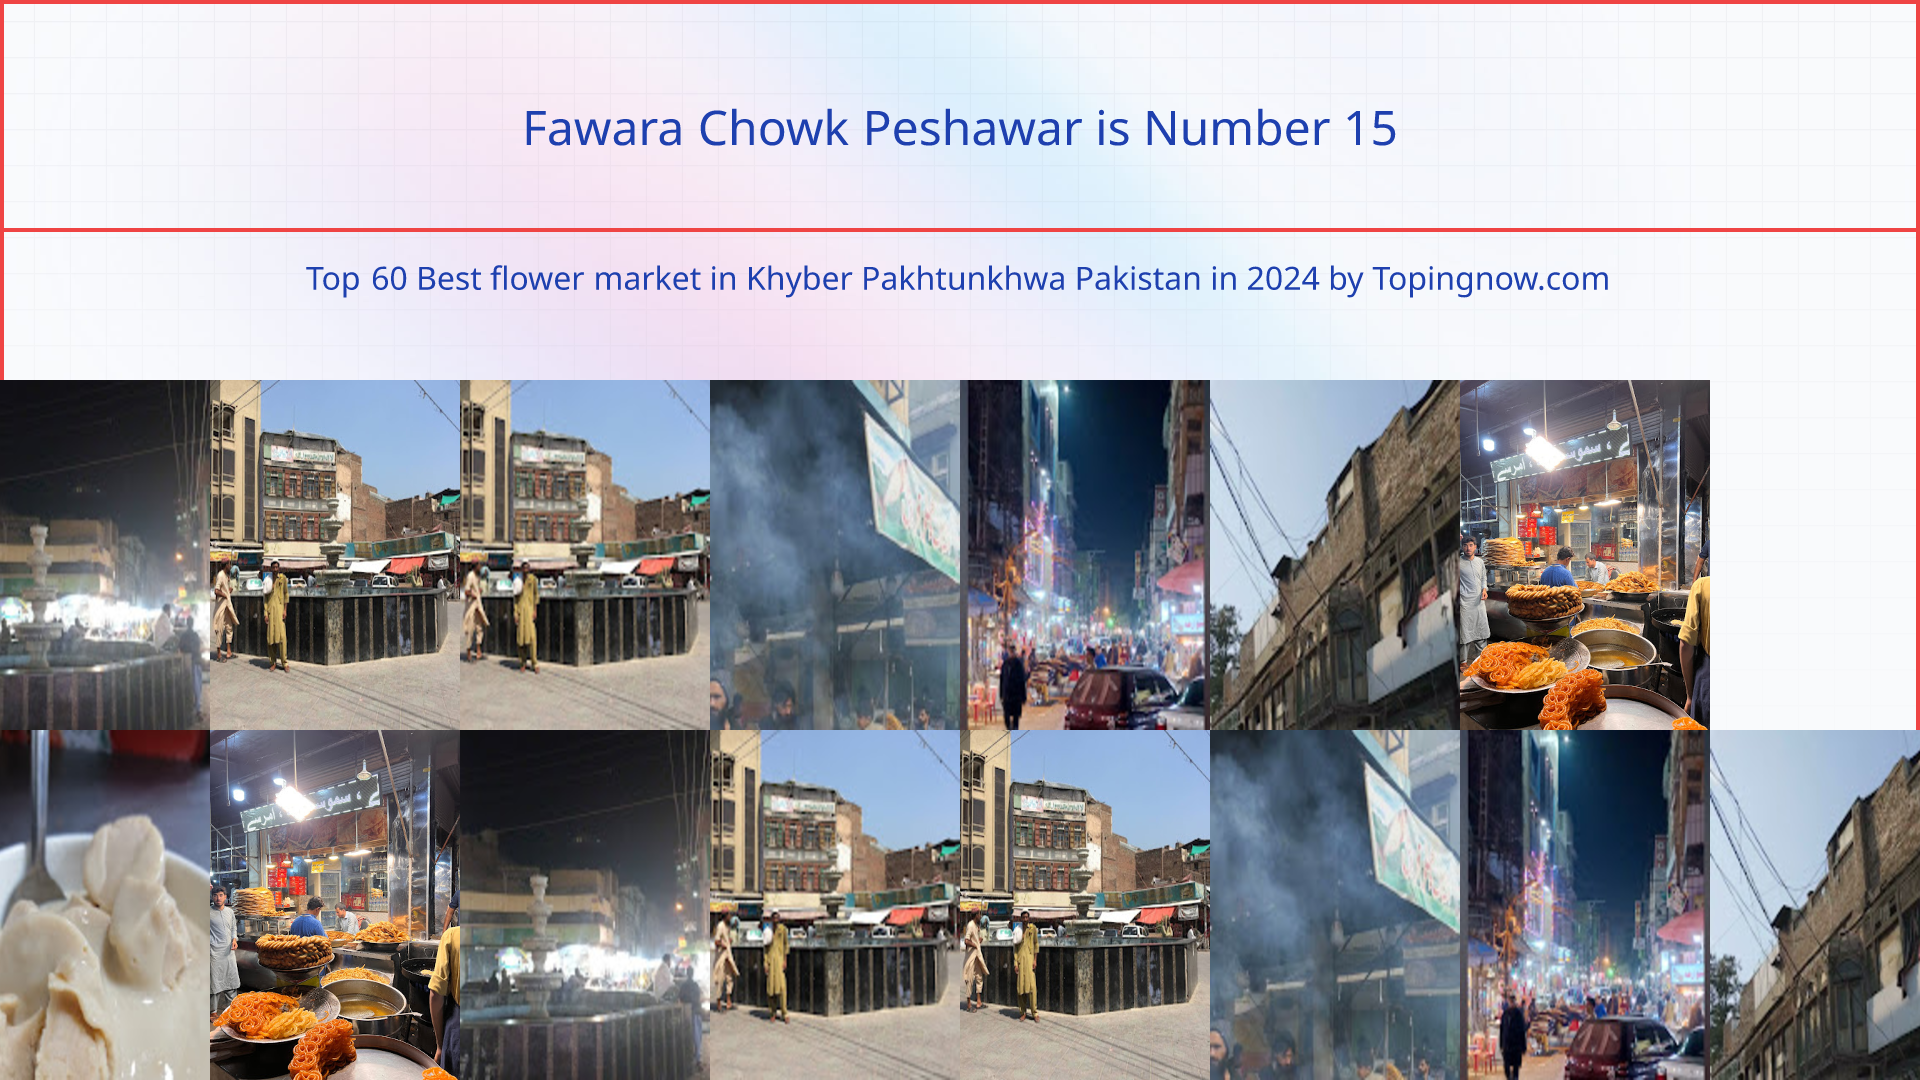 Fawara Chowk Peshawar: Top 60 Best flower market in Khyber Pakhtunkhwa Pakistan in 2024